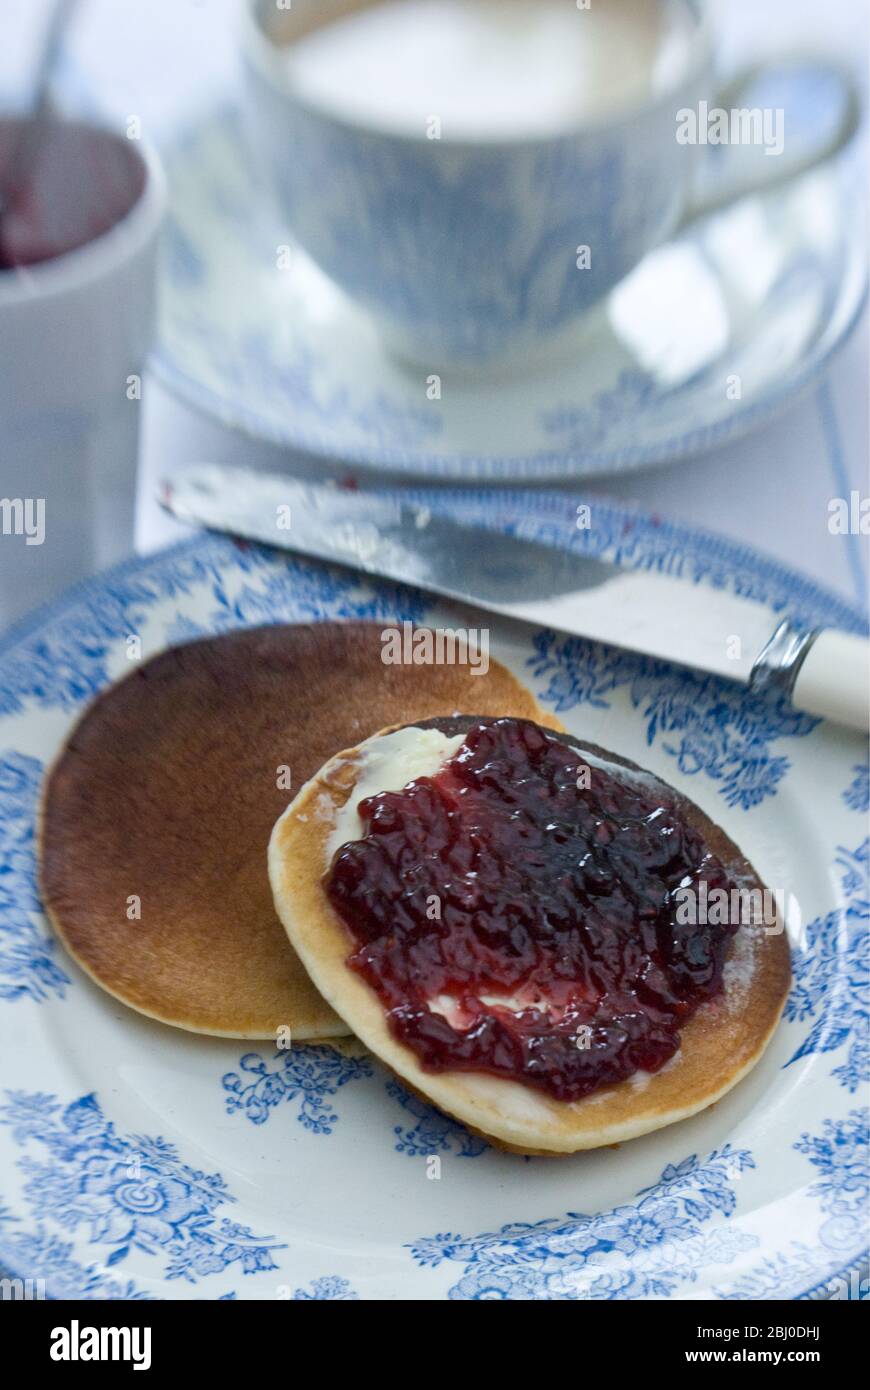 Teatime-Einstellung mit Scotch Pancakes und Himbeermarmelade - Stockfoto